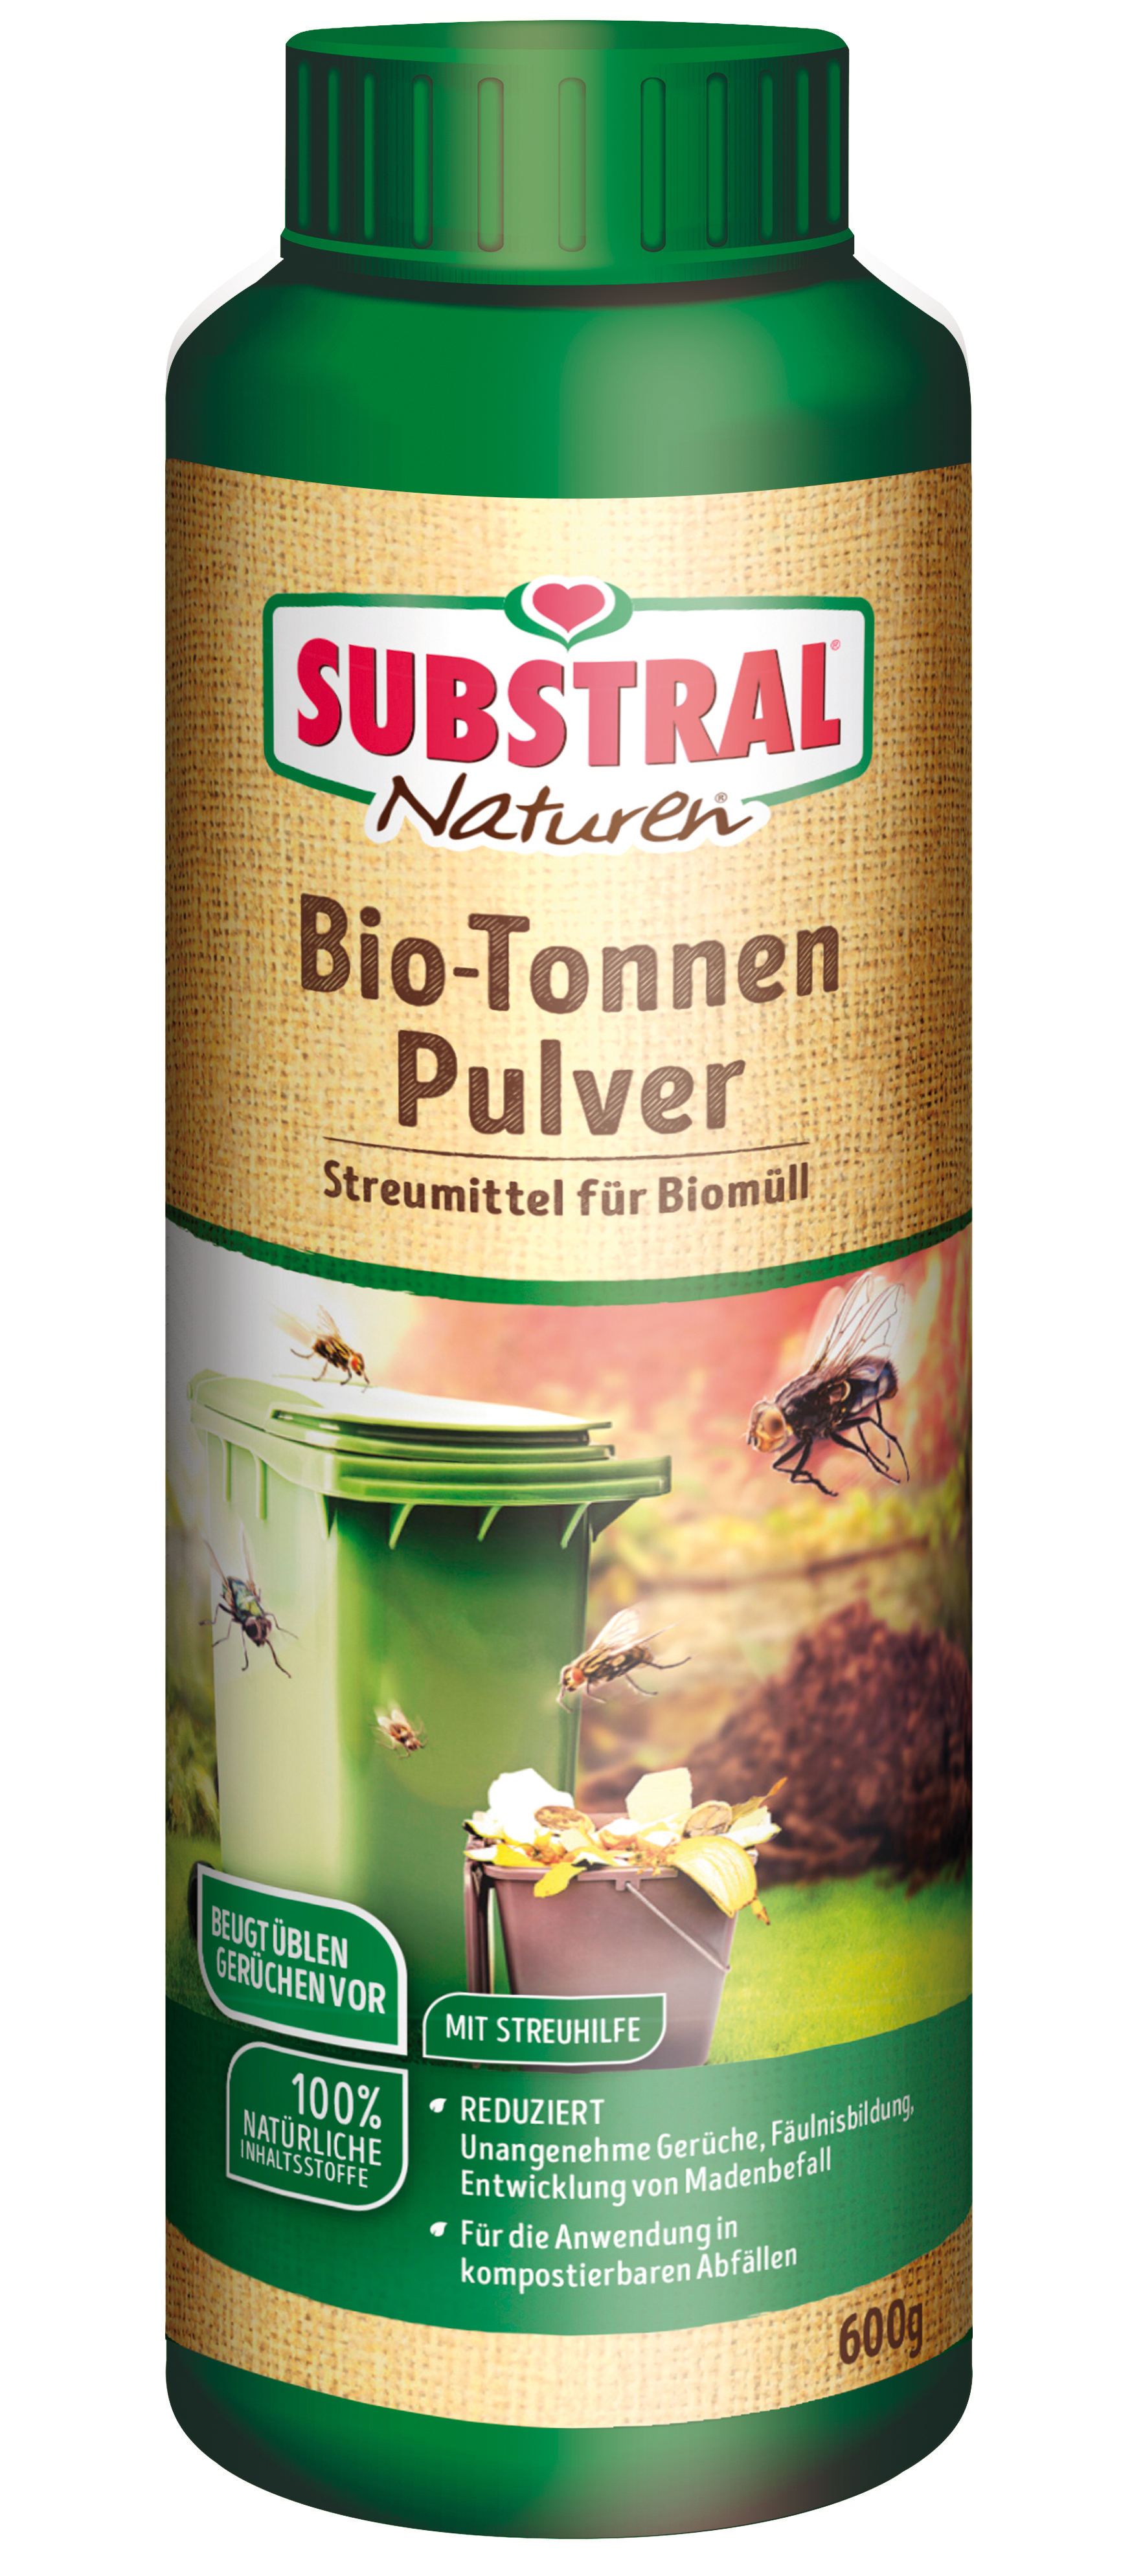 Naturen Bio-Tonnen Pulver 600g